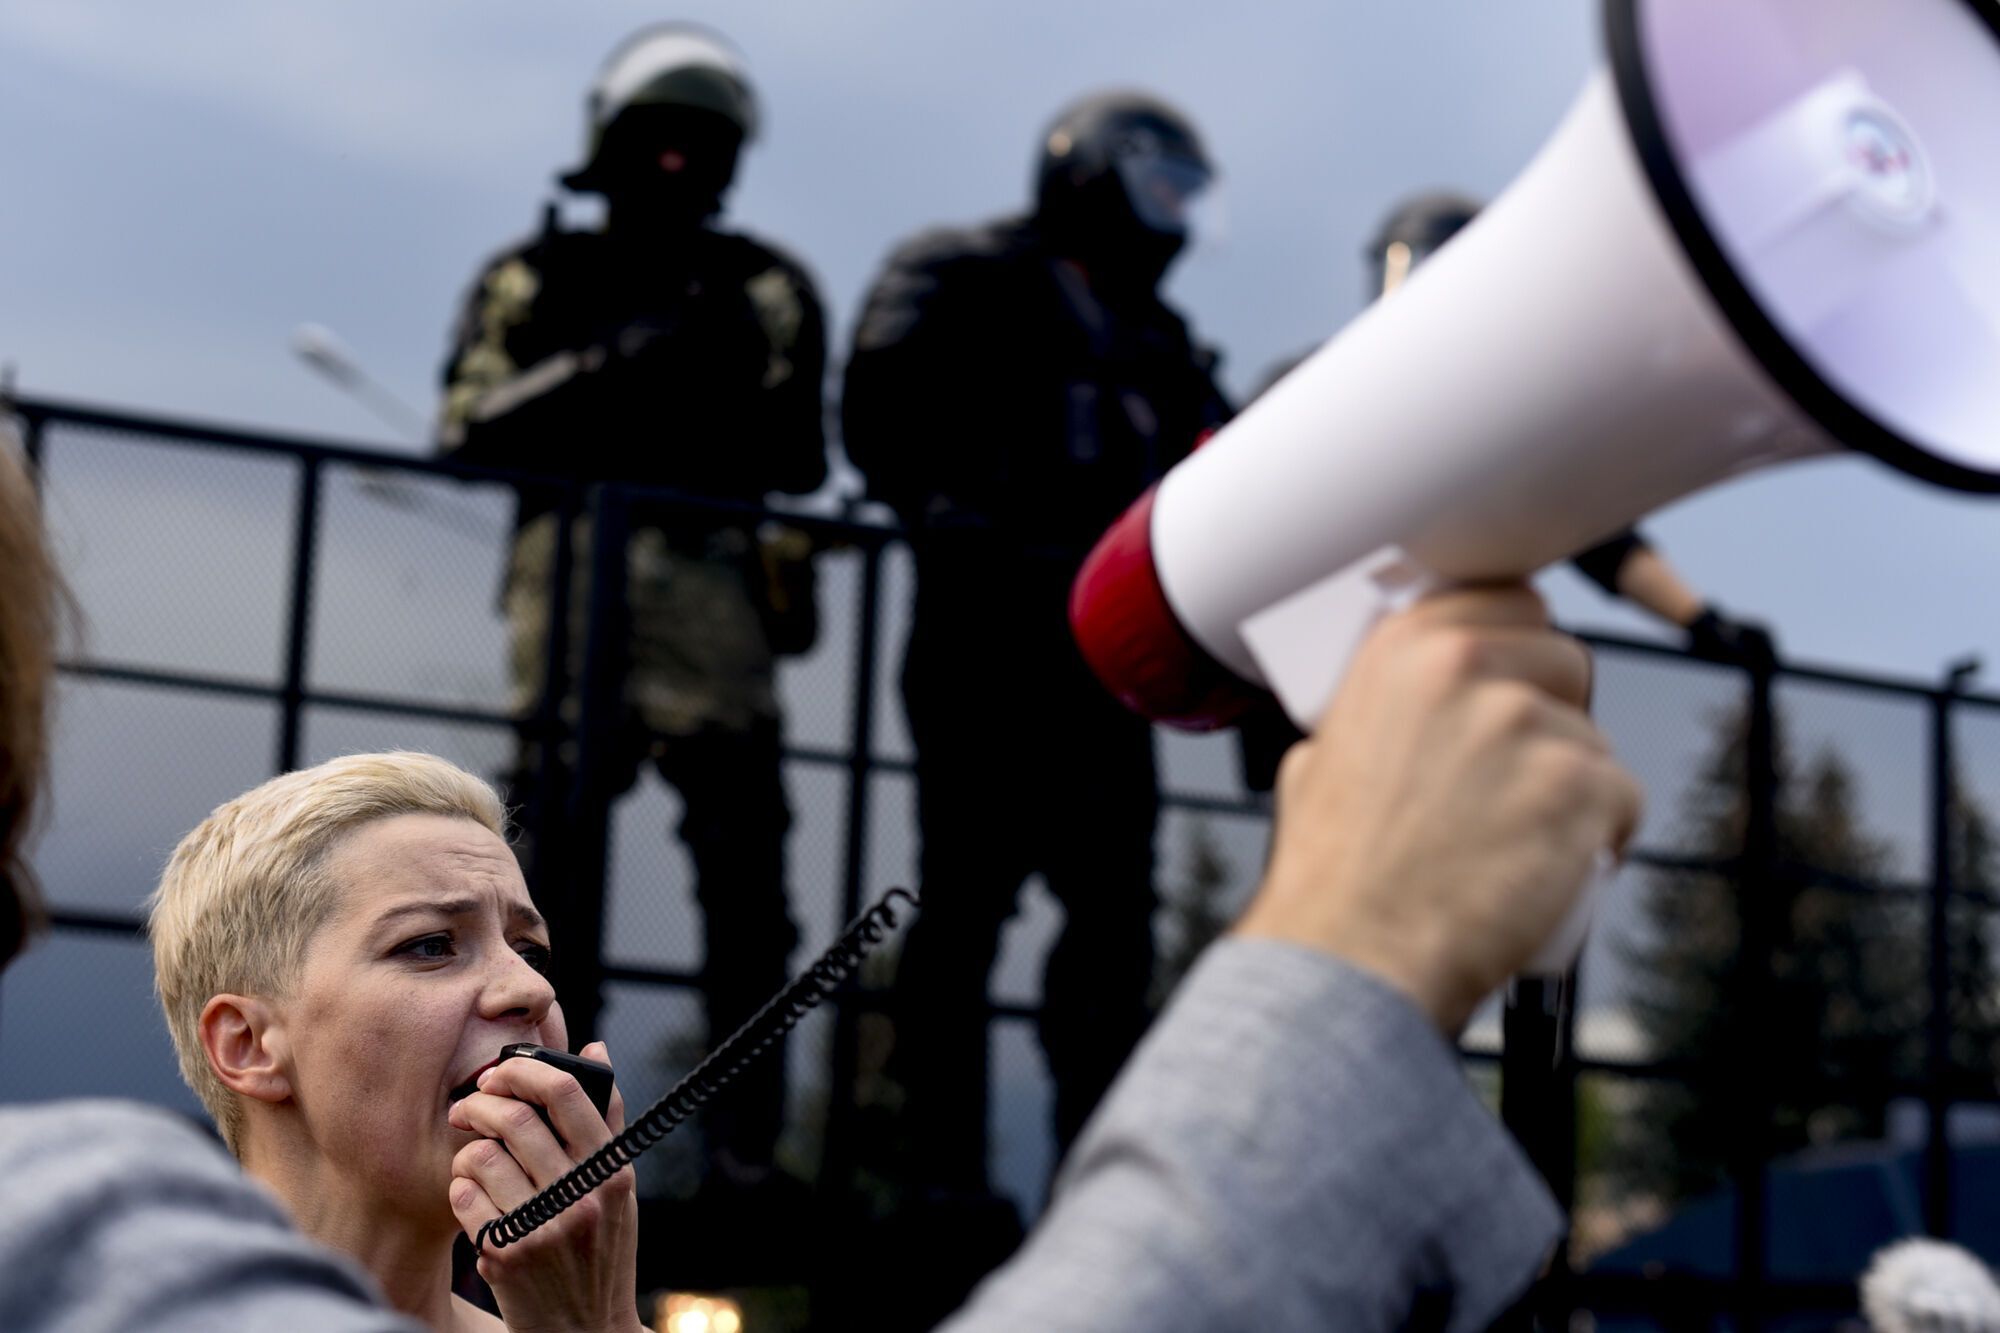 Колесникова активно виступала на мітингах і акціях протесту.